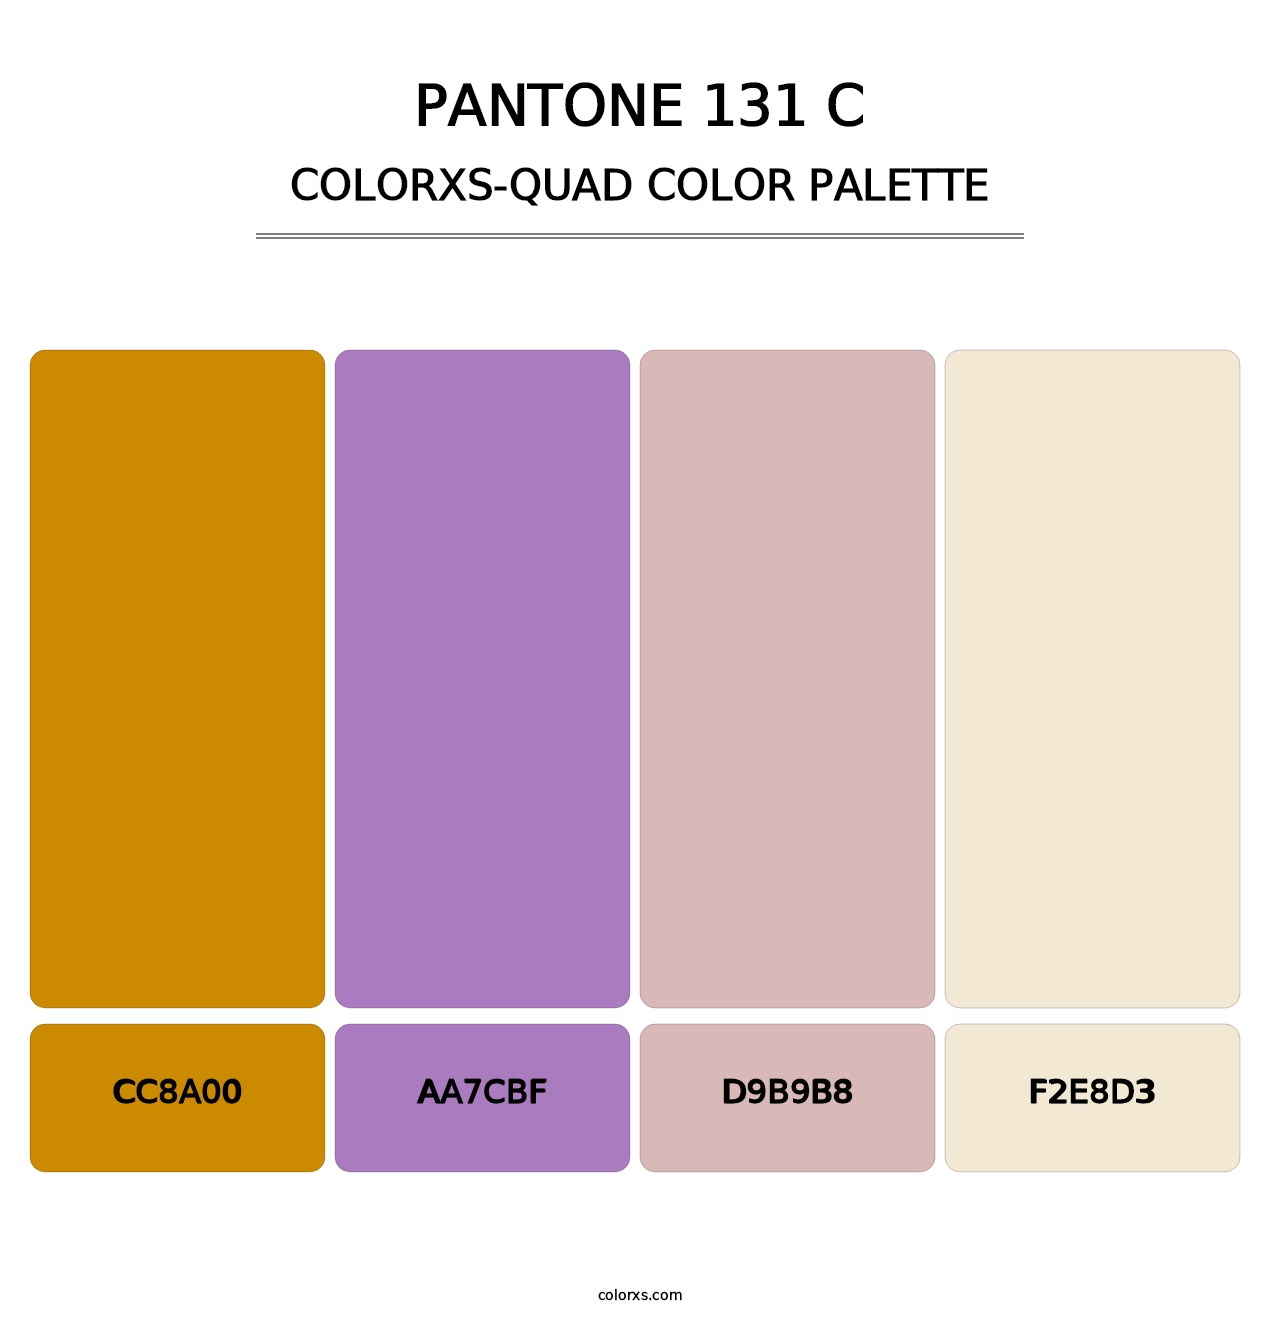 PANTONE 131 C - Colorxs Quad Palette